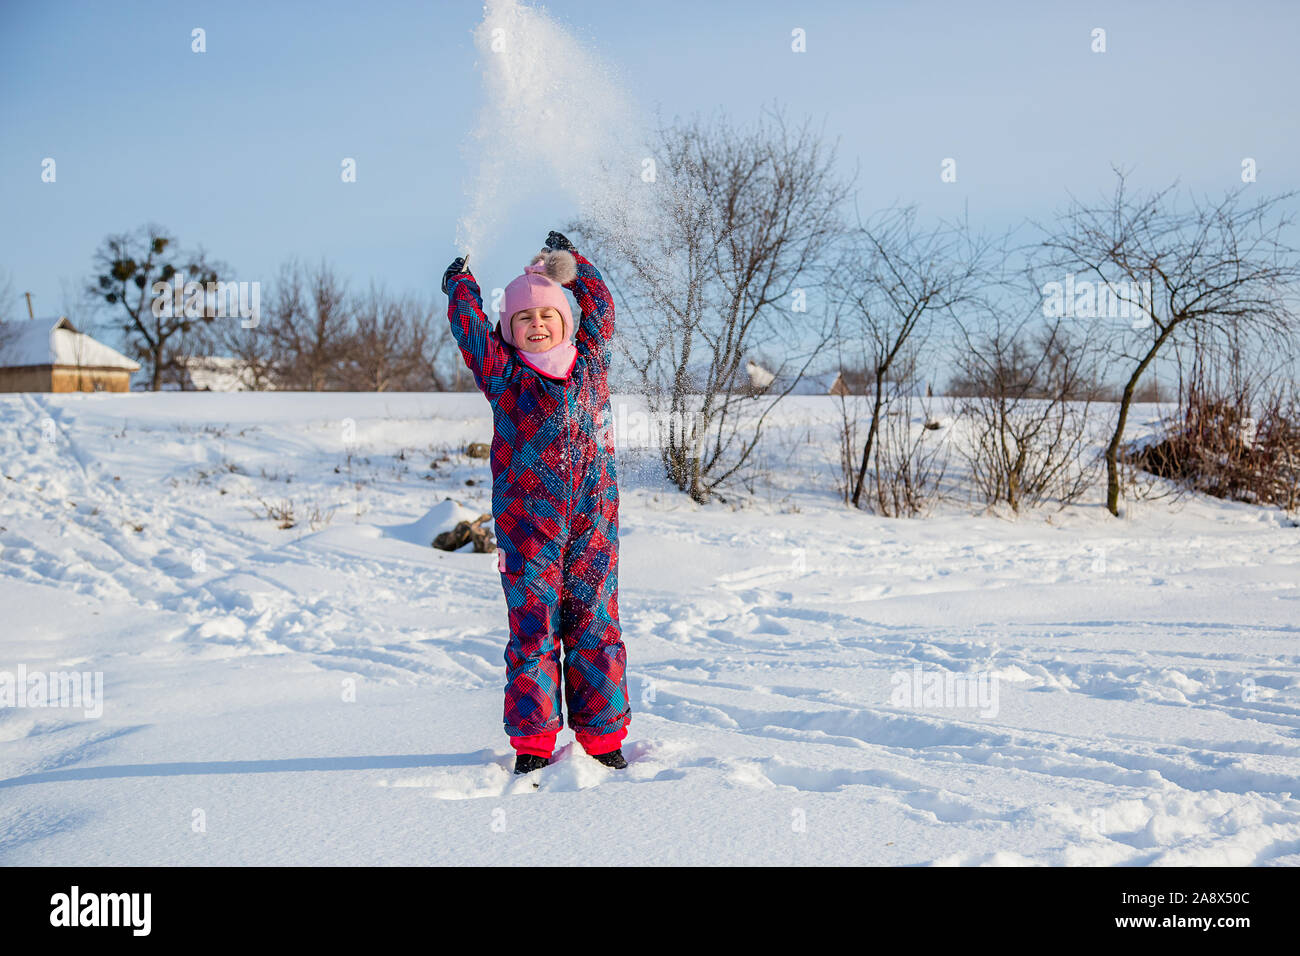 Fröhliches Mädchen wirft Schnee an einem sonnigen Wintertag. Aktive Spiele mit Schnee. Der Winterurlaub. Glückliche Kindheit. Stockfoto